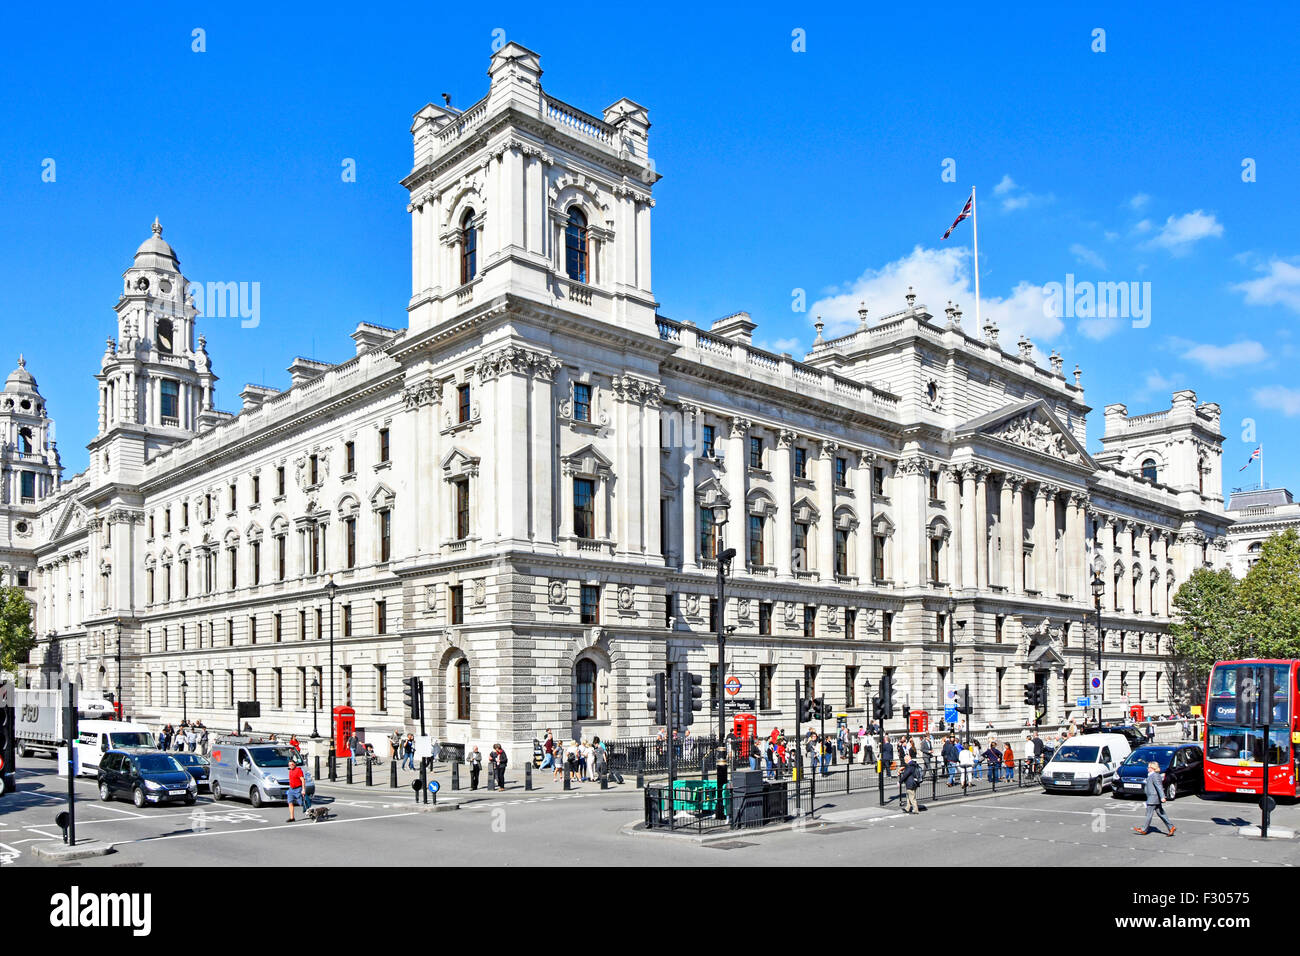 Regierungsbüros Great George Street GOGGS an der Ecke Great George St & Parliament St. wird von HM Revenue & Customs & Other Departments verwendet London UK Stockfoto